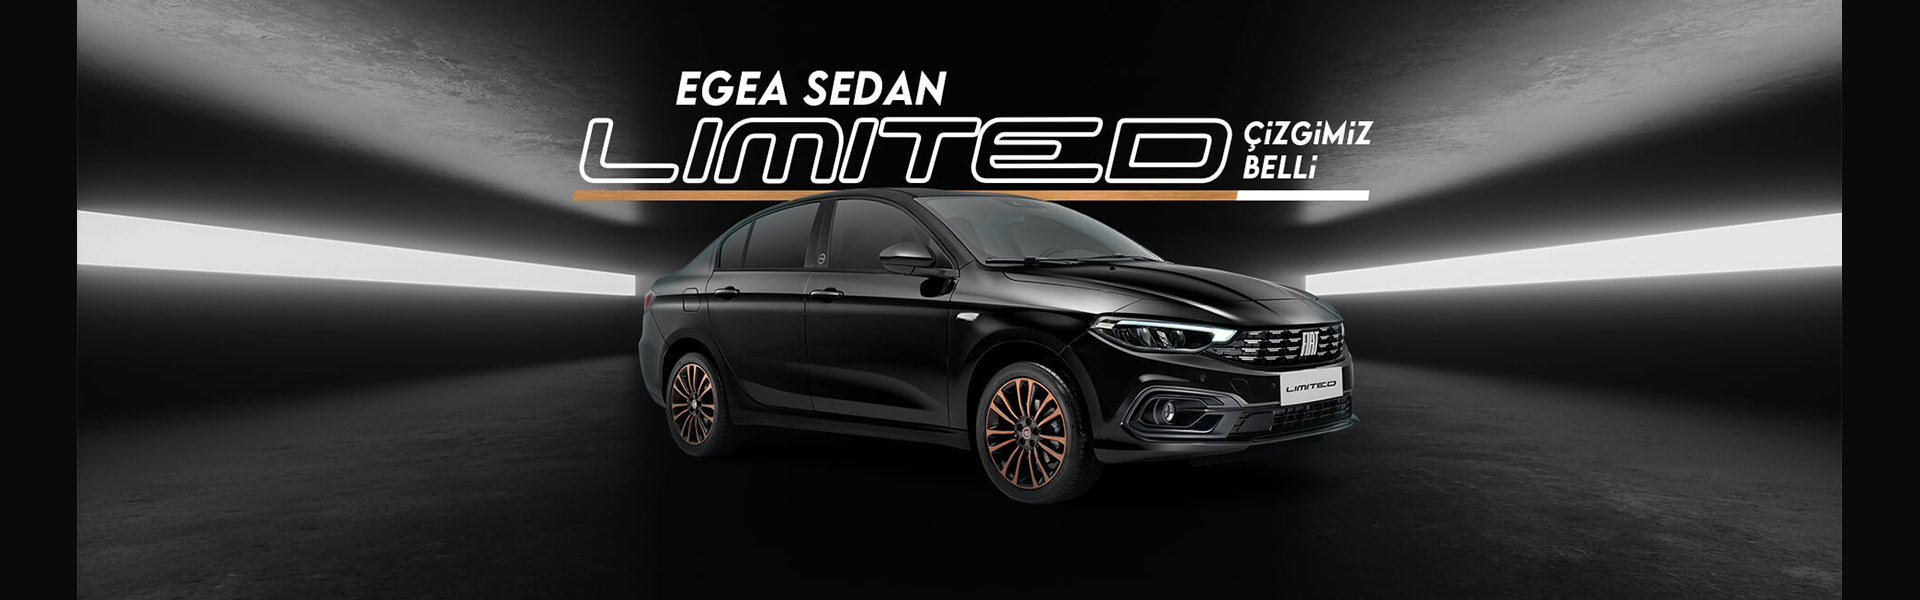 Egea Sedan Limited